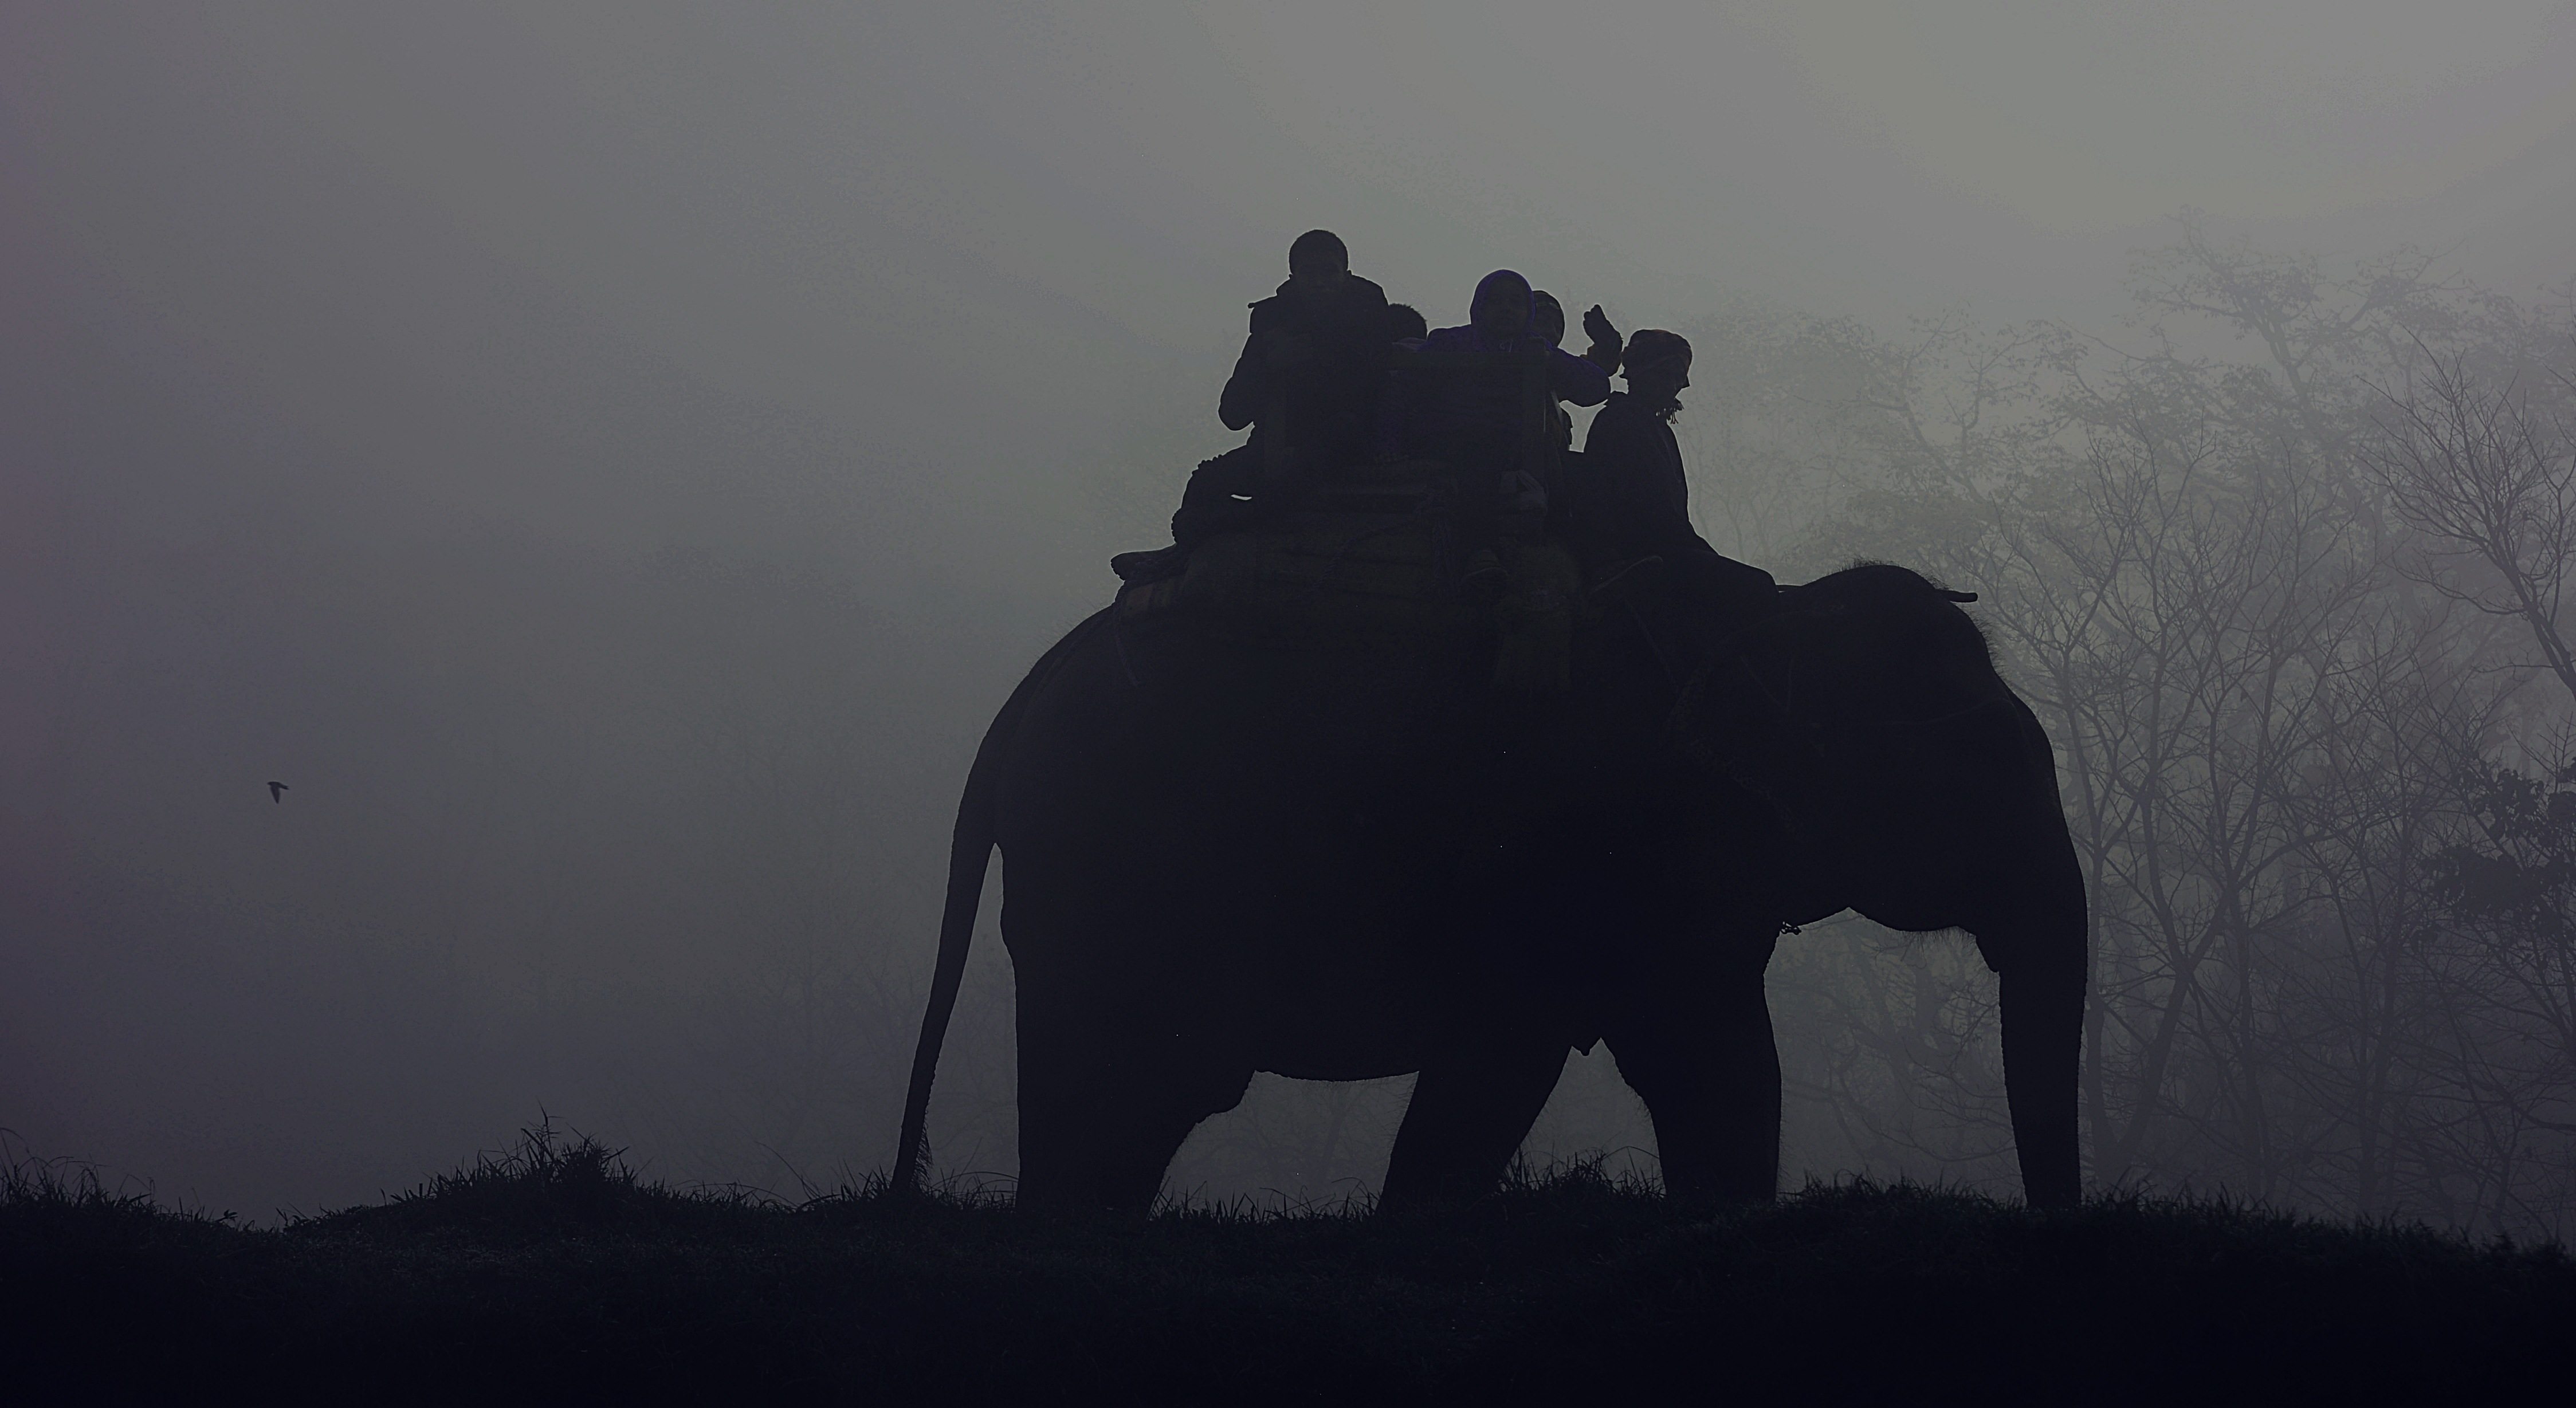 Elephant riders